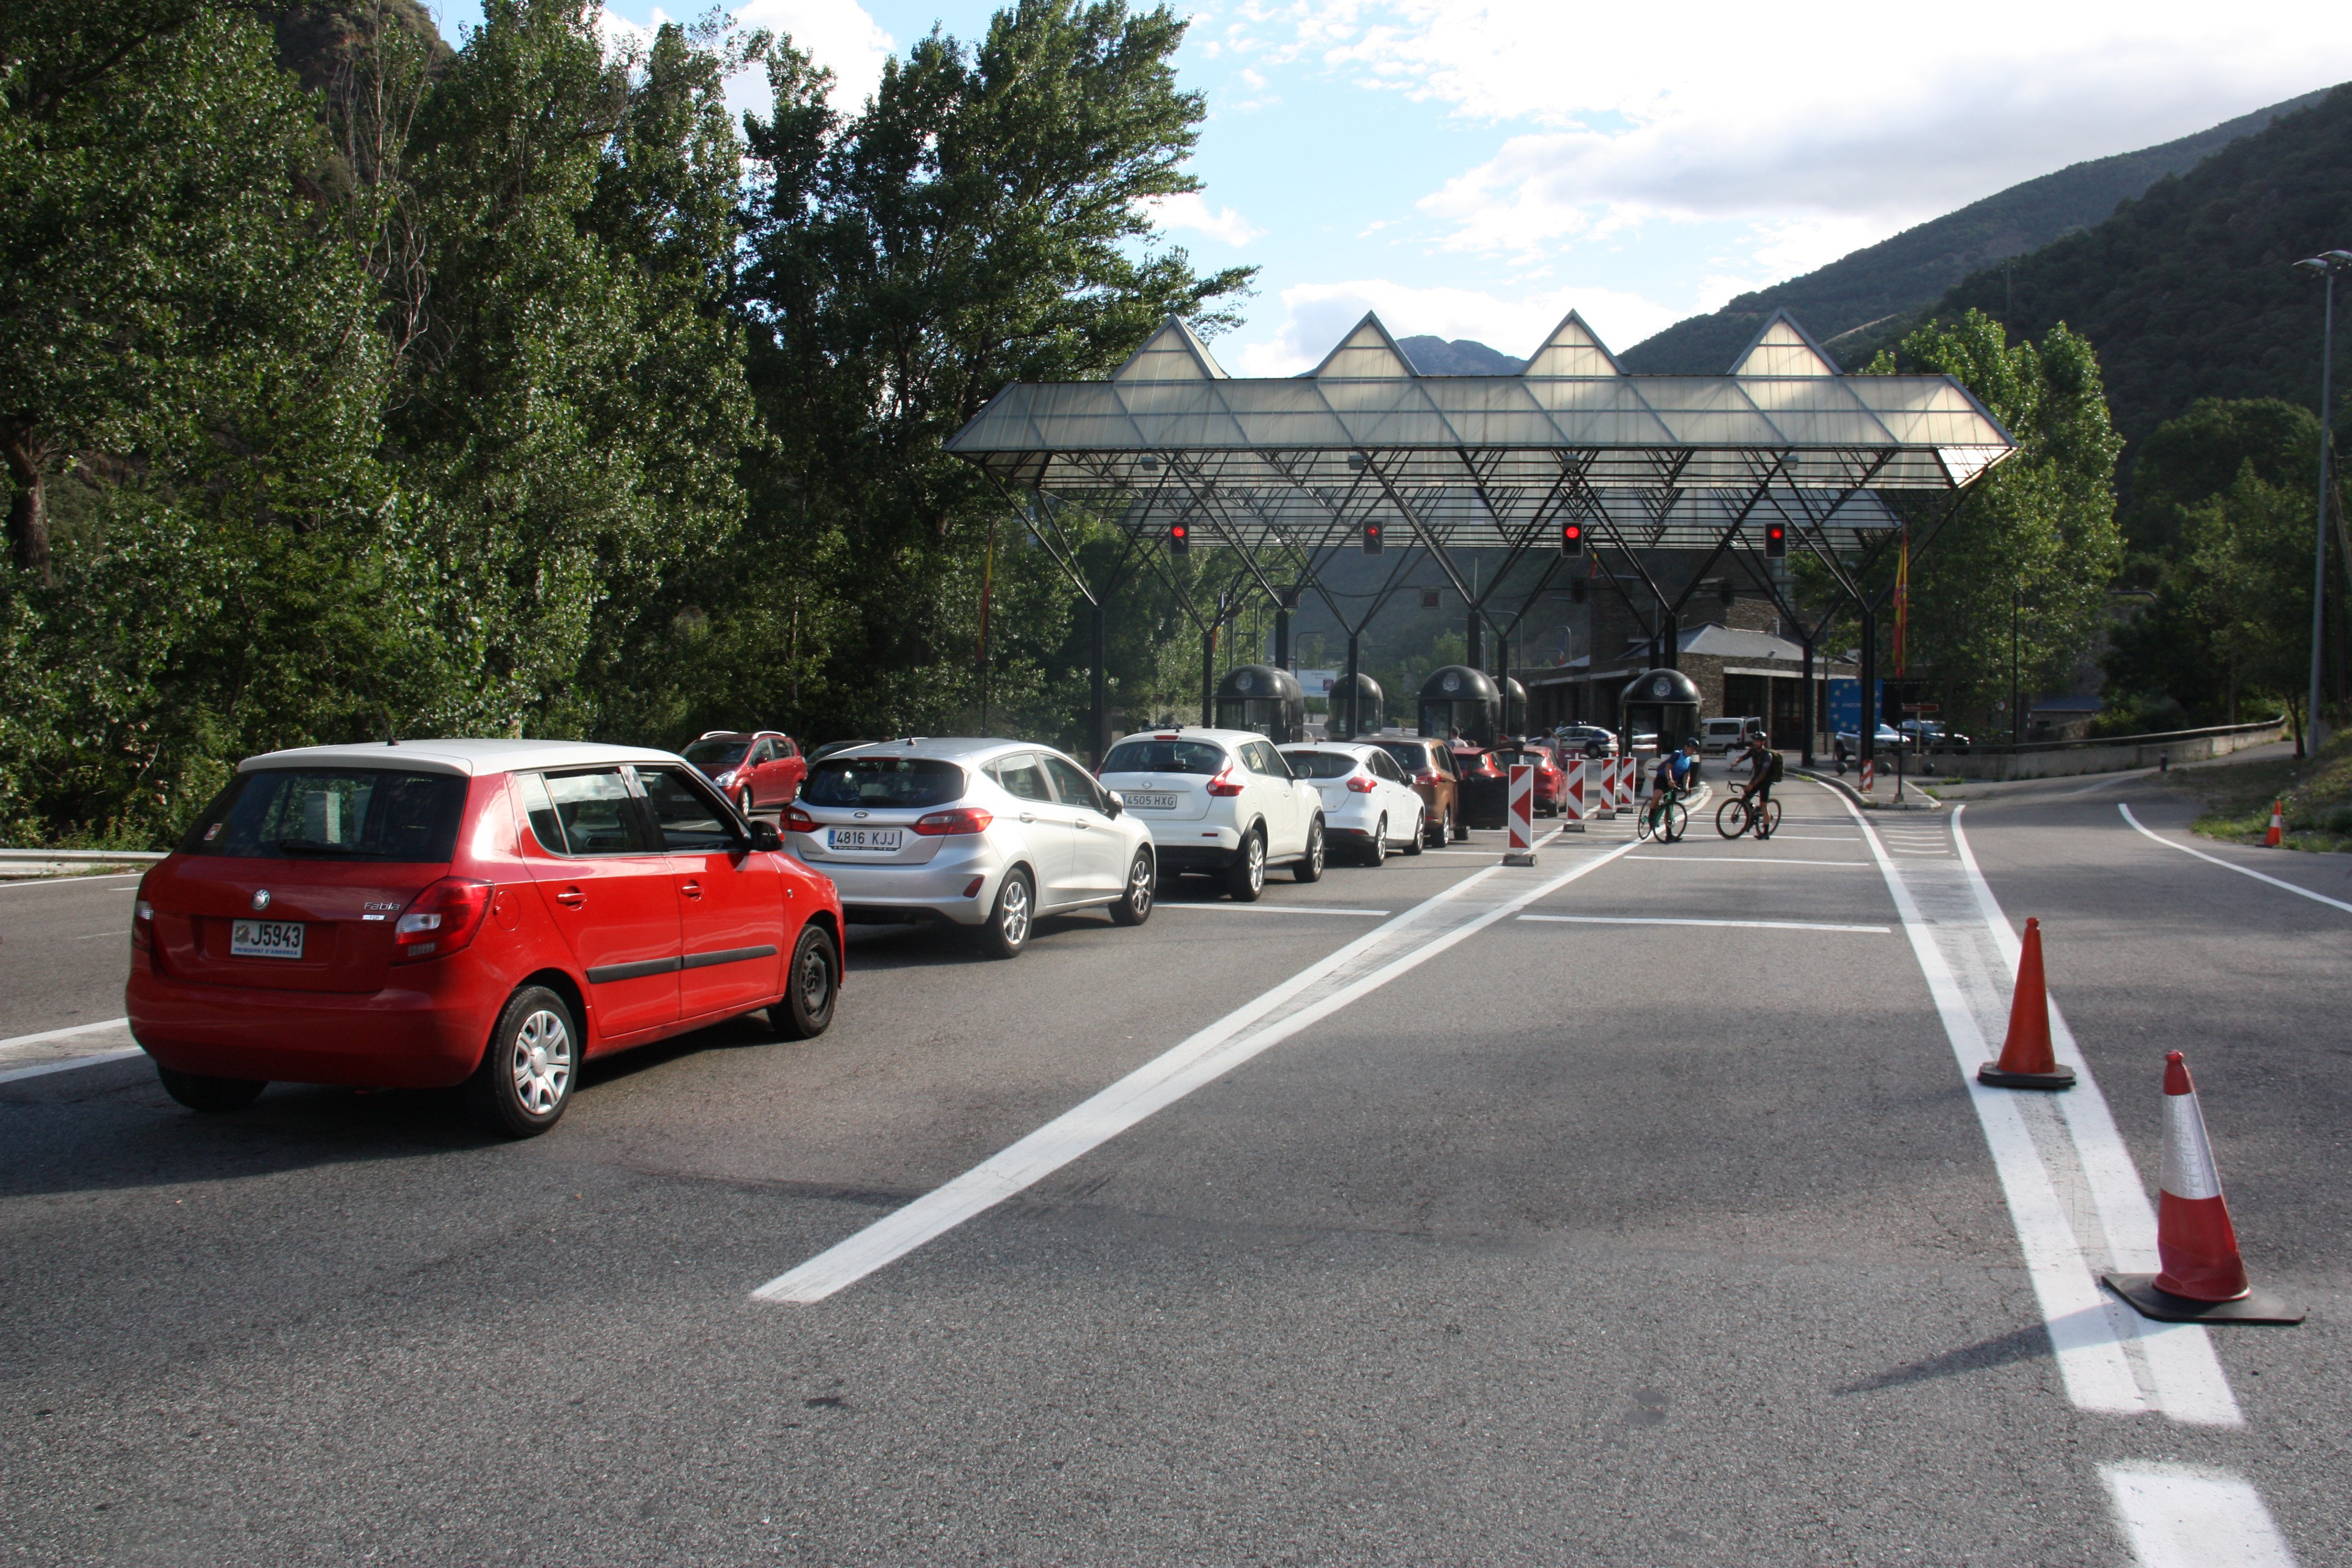 Transport sanitari i mini busos ja circulen per la carretera d'accés a Andorra